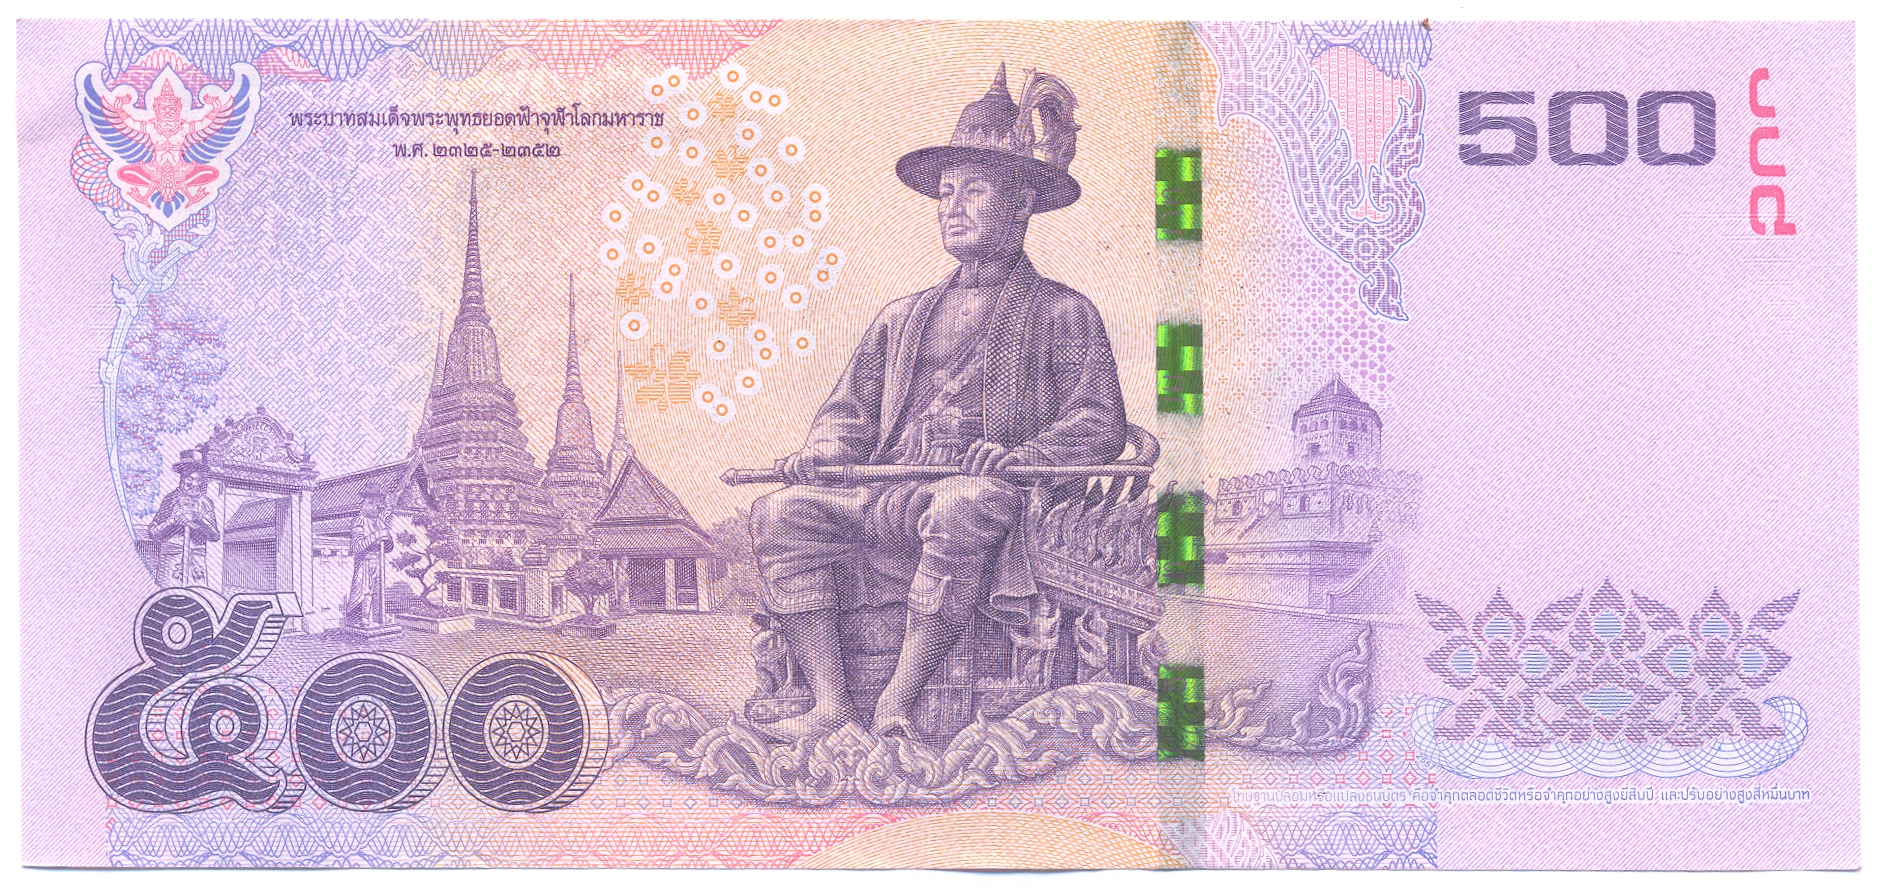 500 бат. Банкноты Таиланда 500 бат. Тайские купюры 500 Батов. Банкноты Таиланда 100 бат. Тайланд банкнота 500 бат.